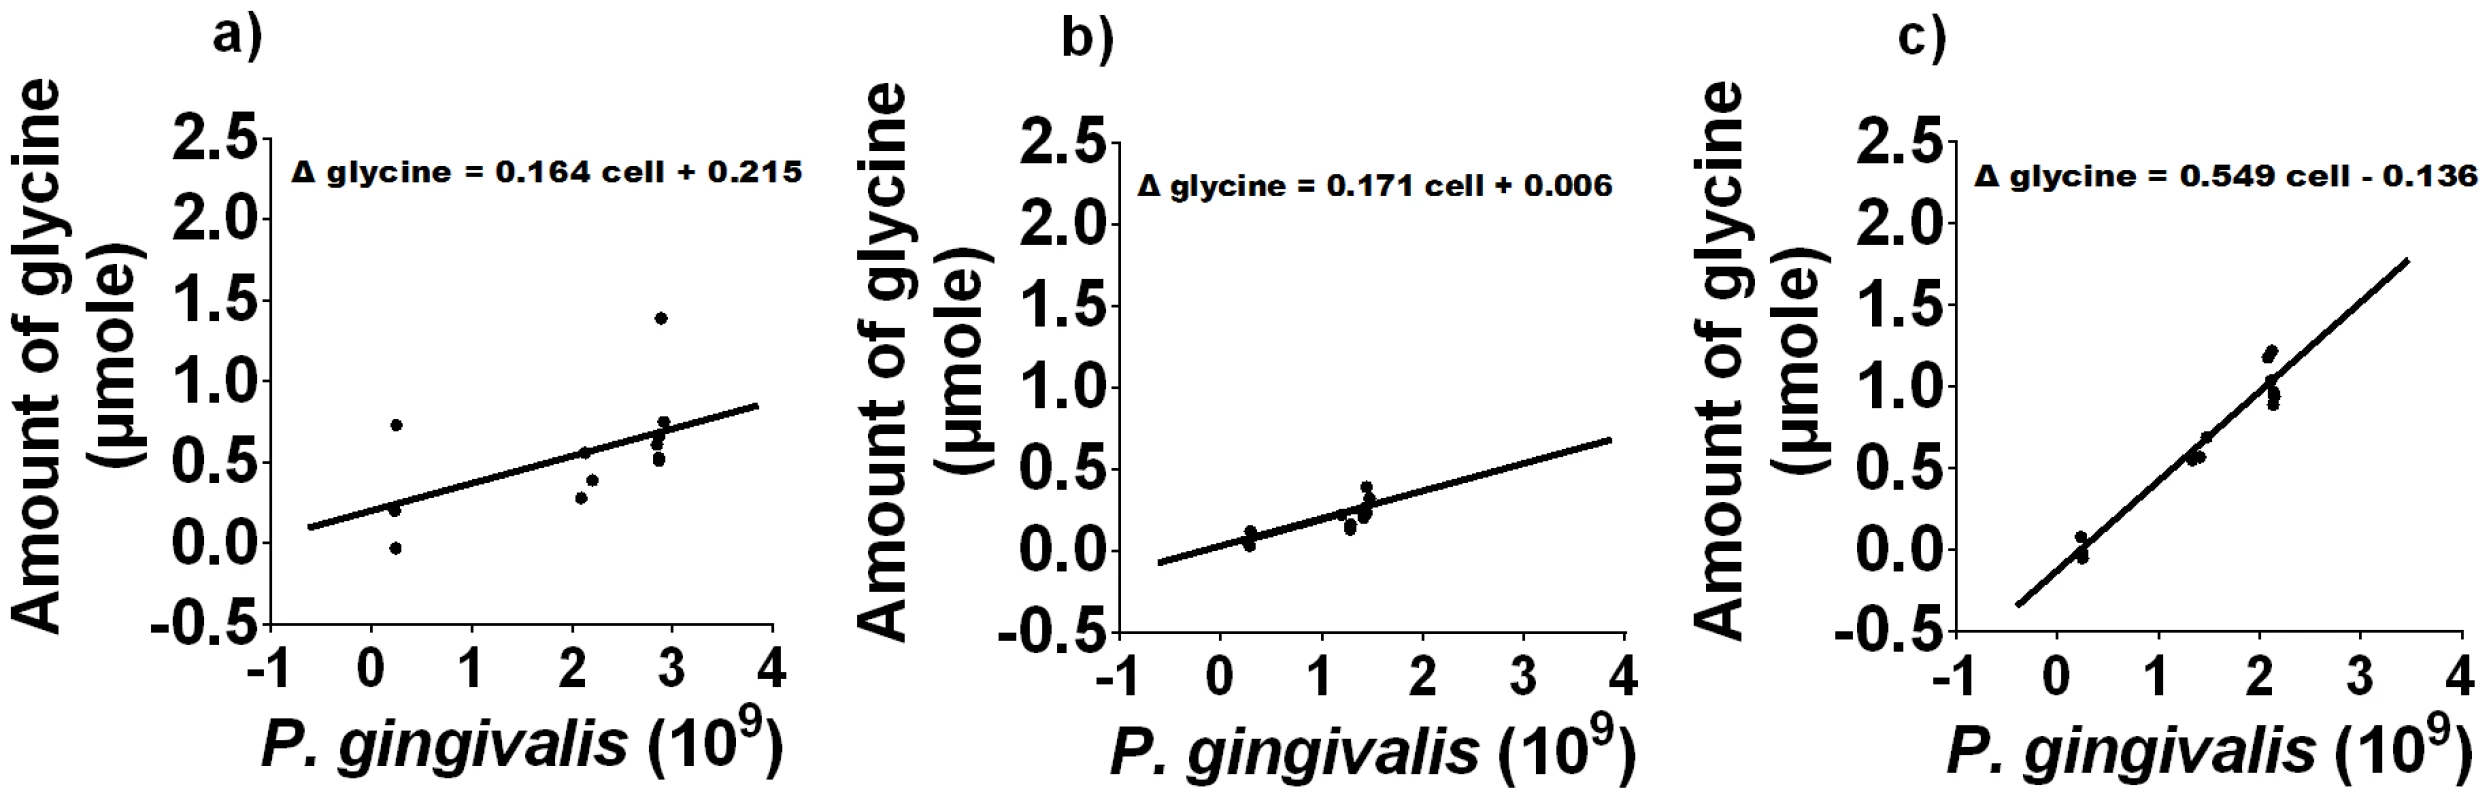 Free glycine production during <i>P. gingivalis</i> growth.